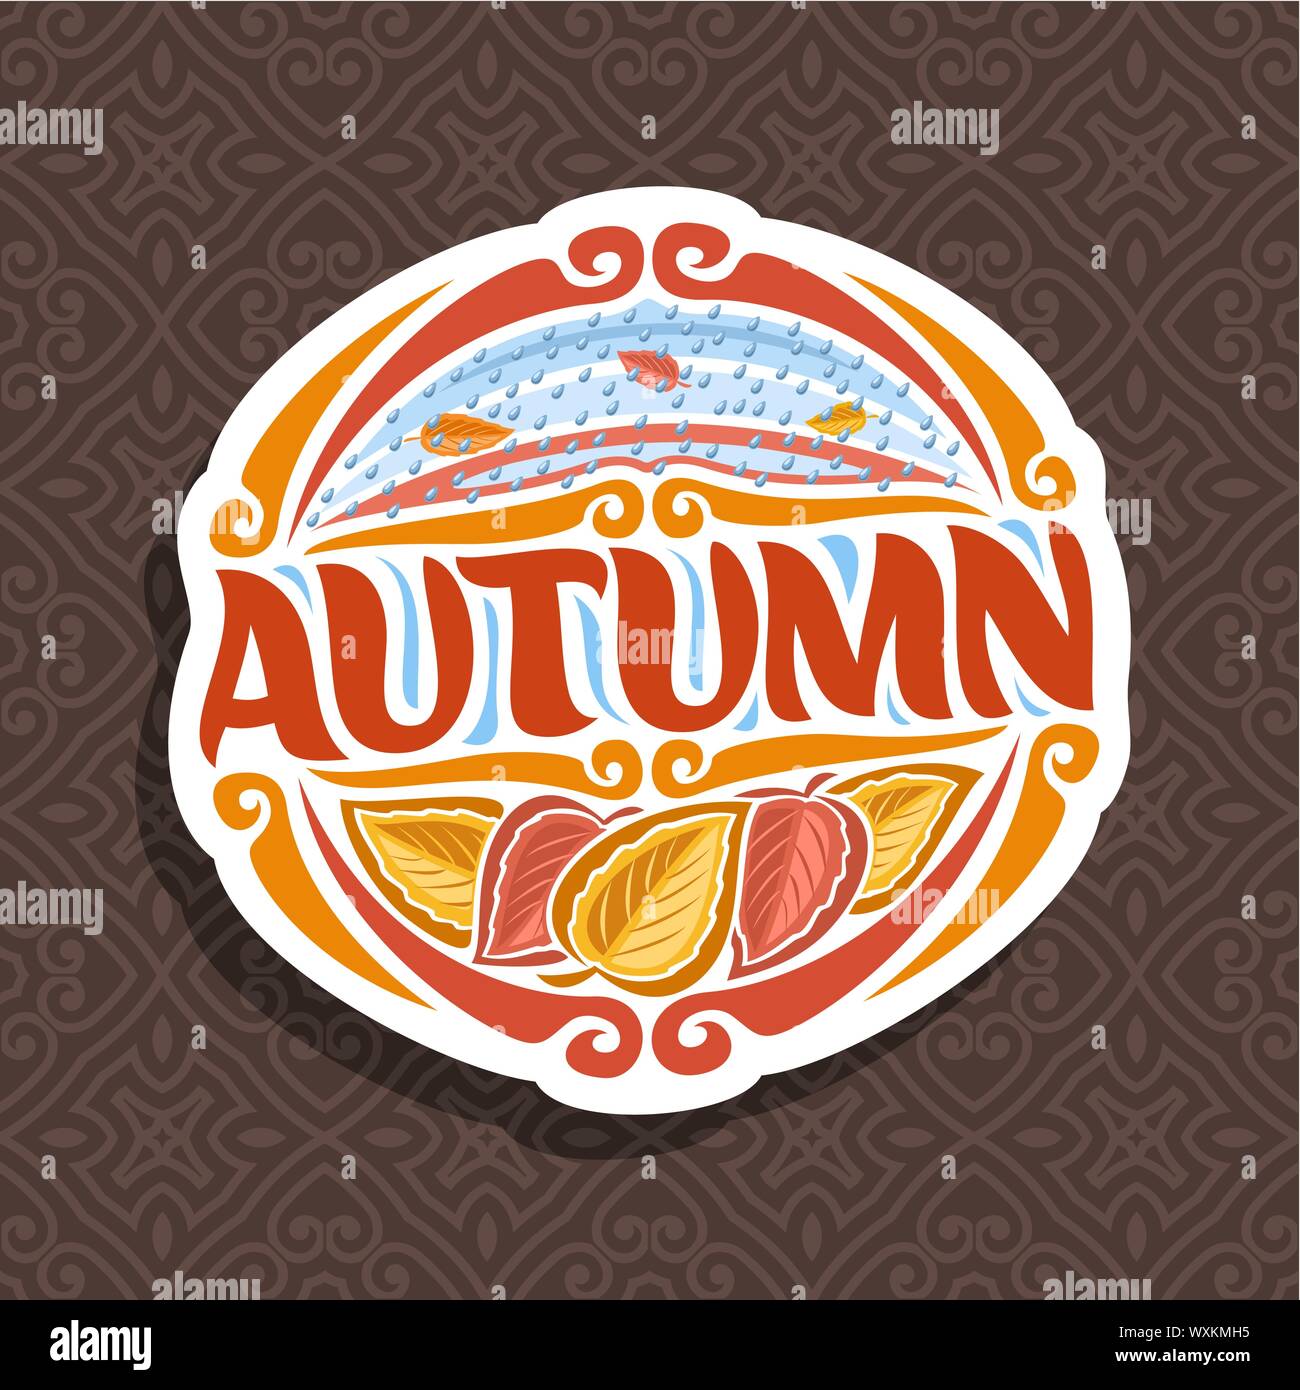 Logo vectoriel pour l'automne Saison : icône ronde à la chute des gouttes de pluie sur brown résumé fond, lettrage - automne, signer avec les feuilles d'automne sur couture Illustration de Vecteur